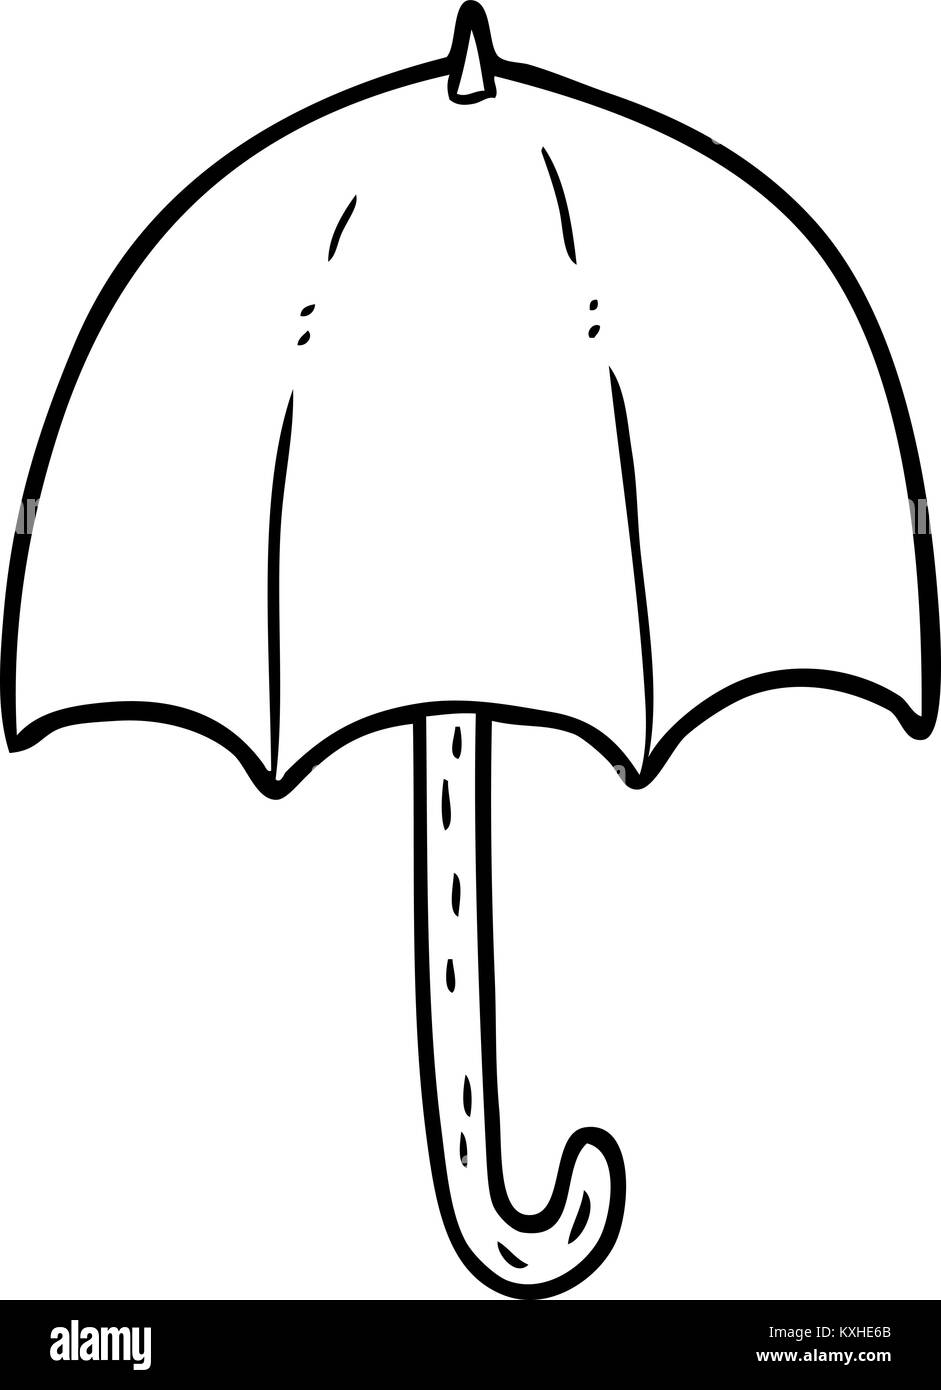 Le dessin des lignes d'un parapluie ouvert Image Vectorielle Stock - Alamy